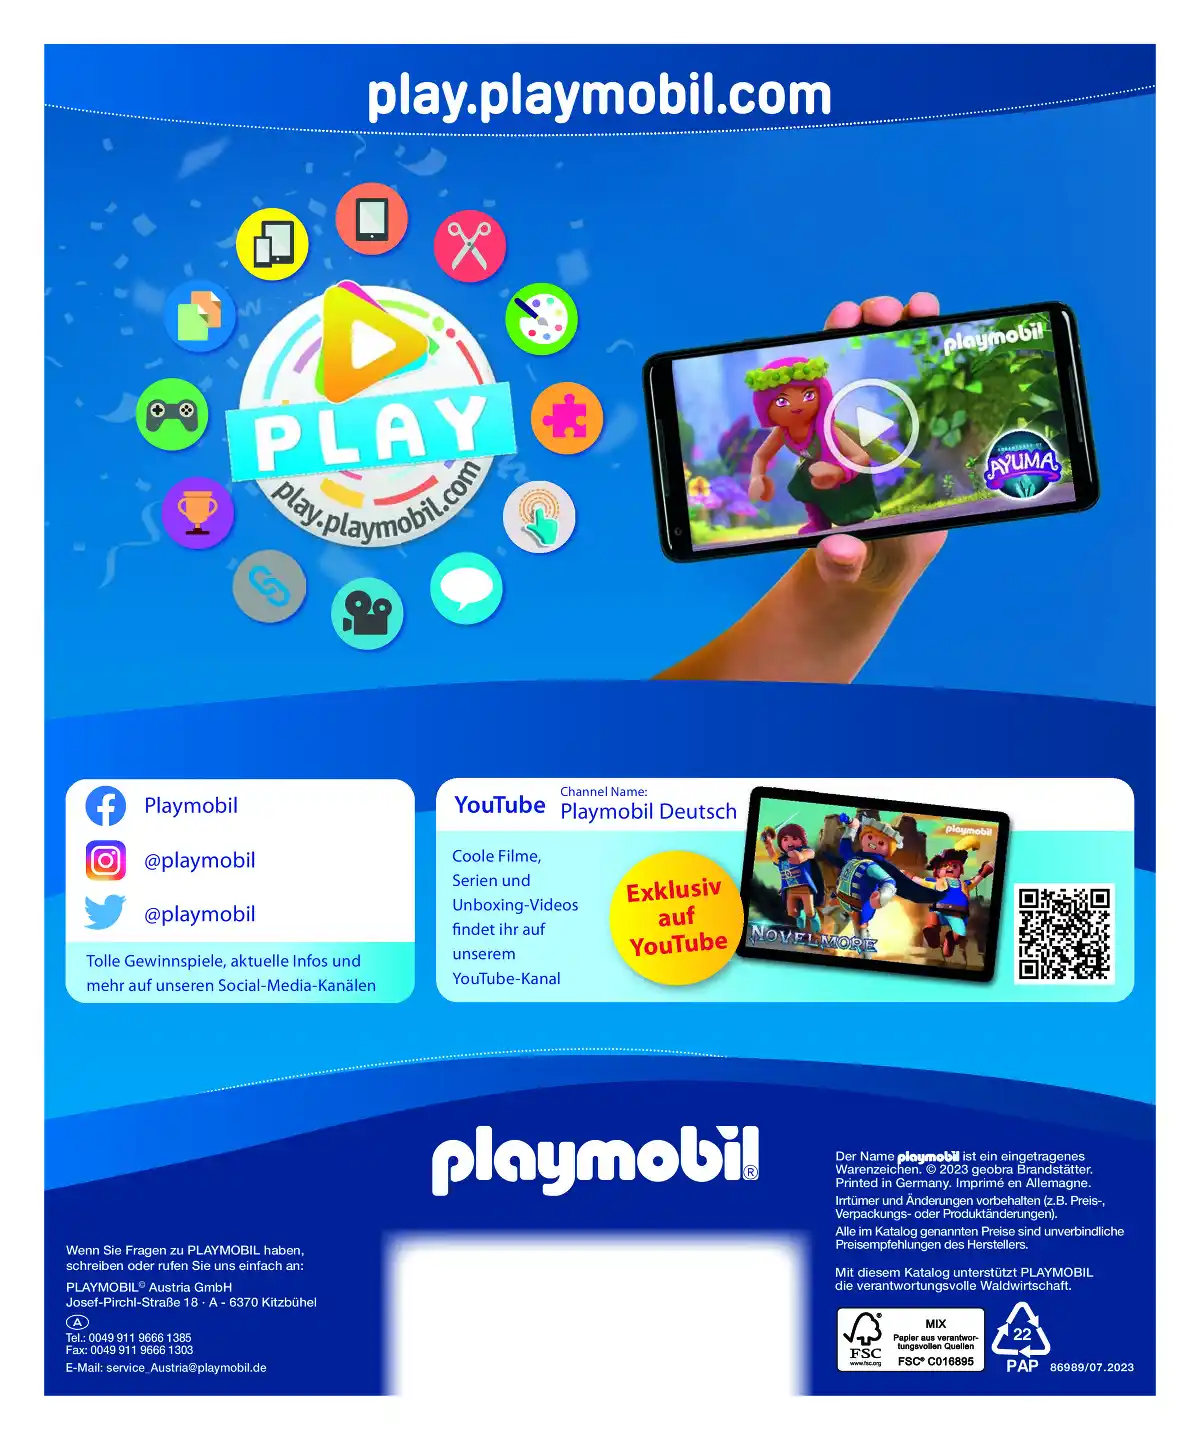 playmobil_at